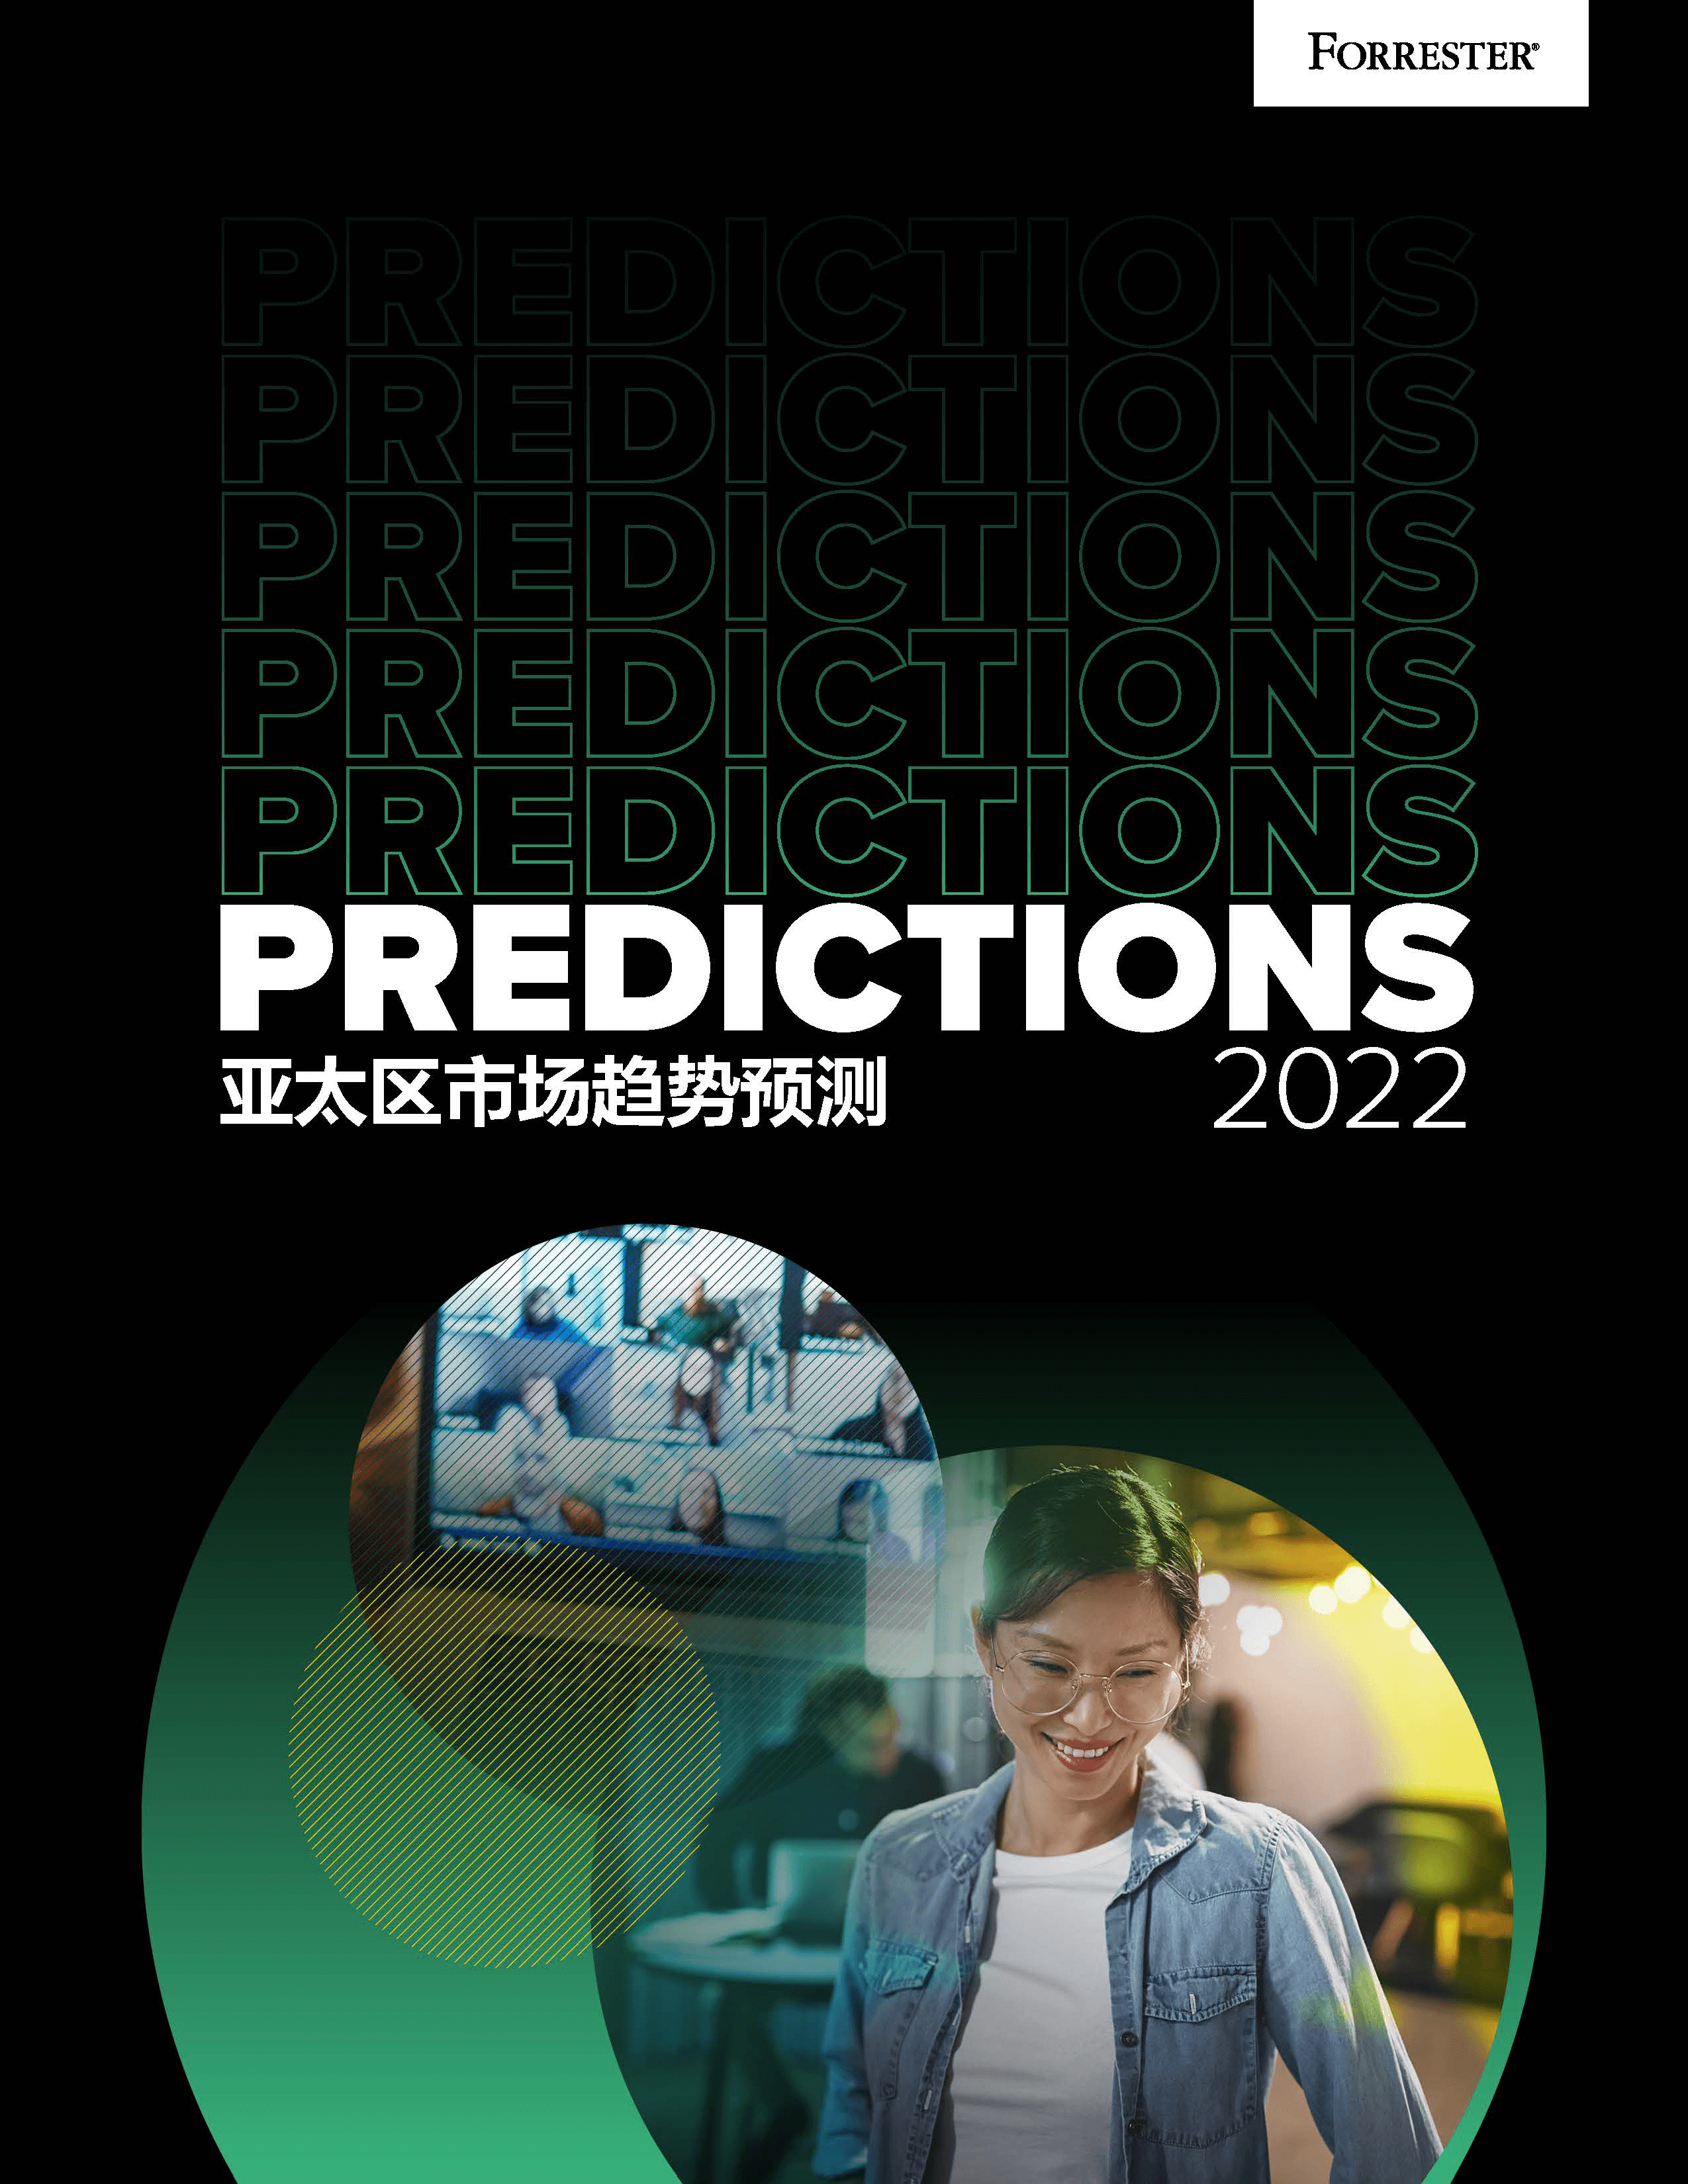 2022年亚太区市场趋势预测